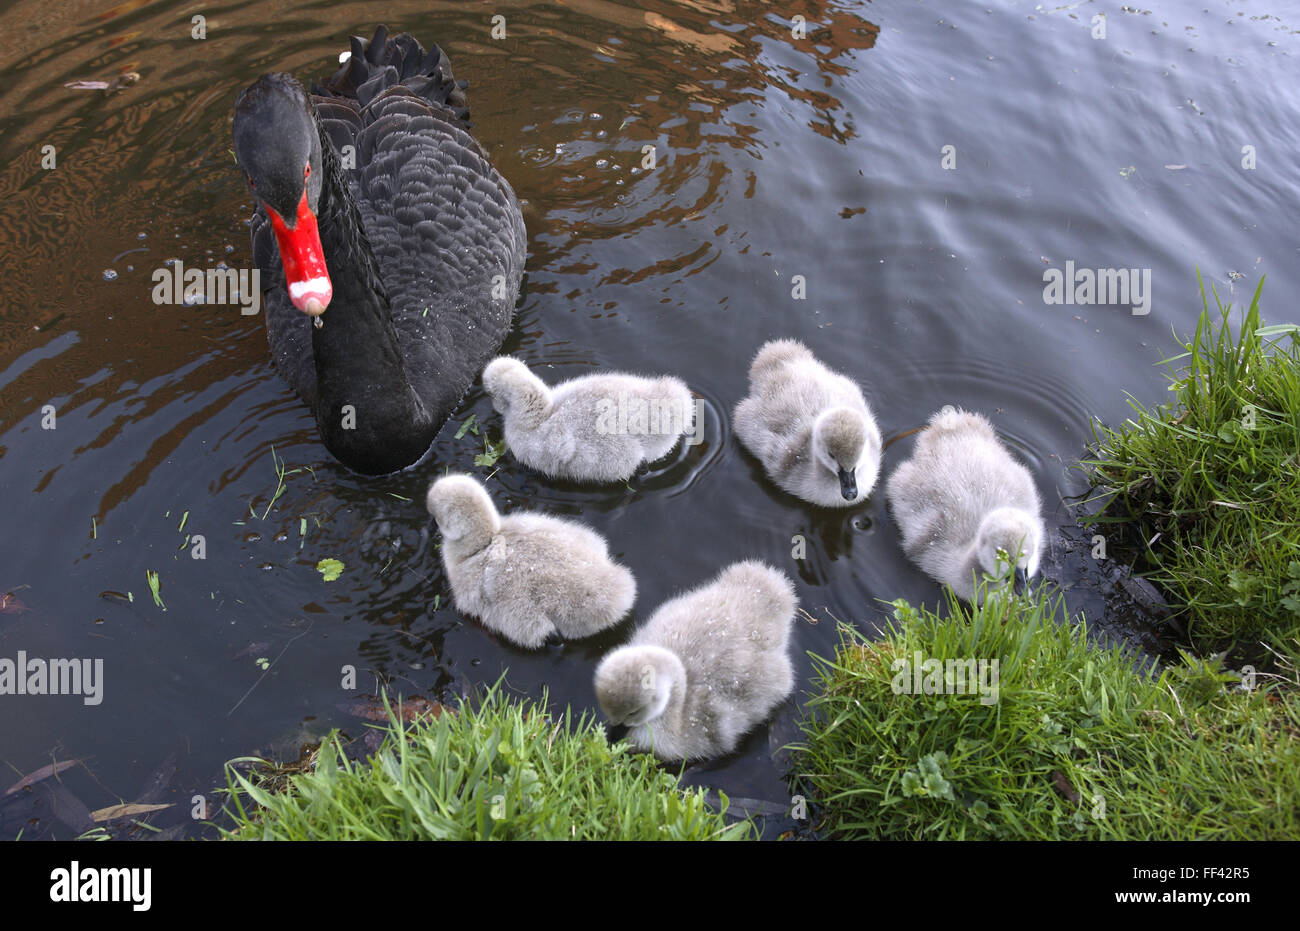 DEU, Alemania, Black Swan (lat. Cygnus atratus) con pollitos. DEU, Deutschland, Trauerschwan (lat. Cygnus atratus) mit Jungen. Foto de stock